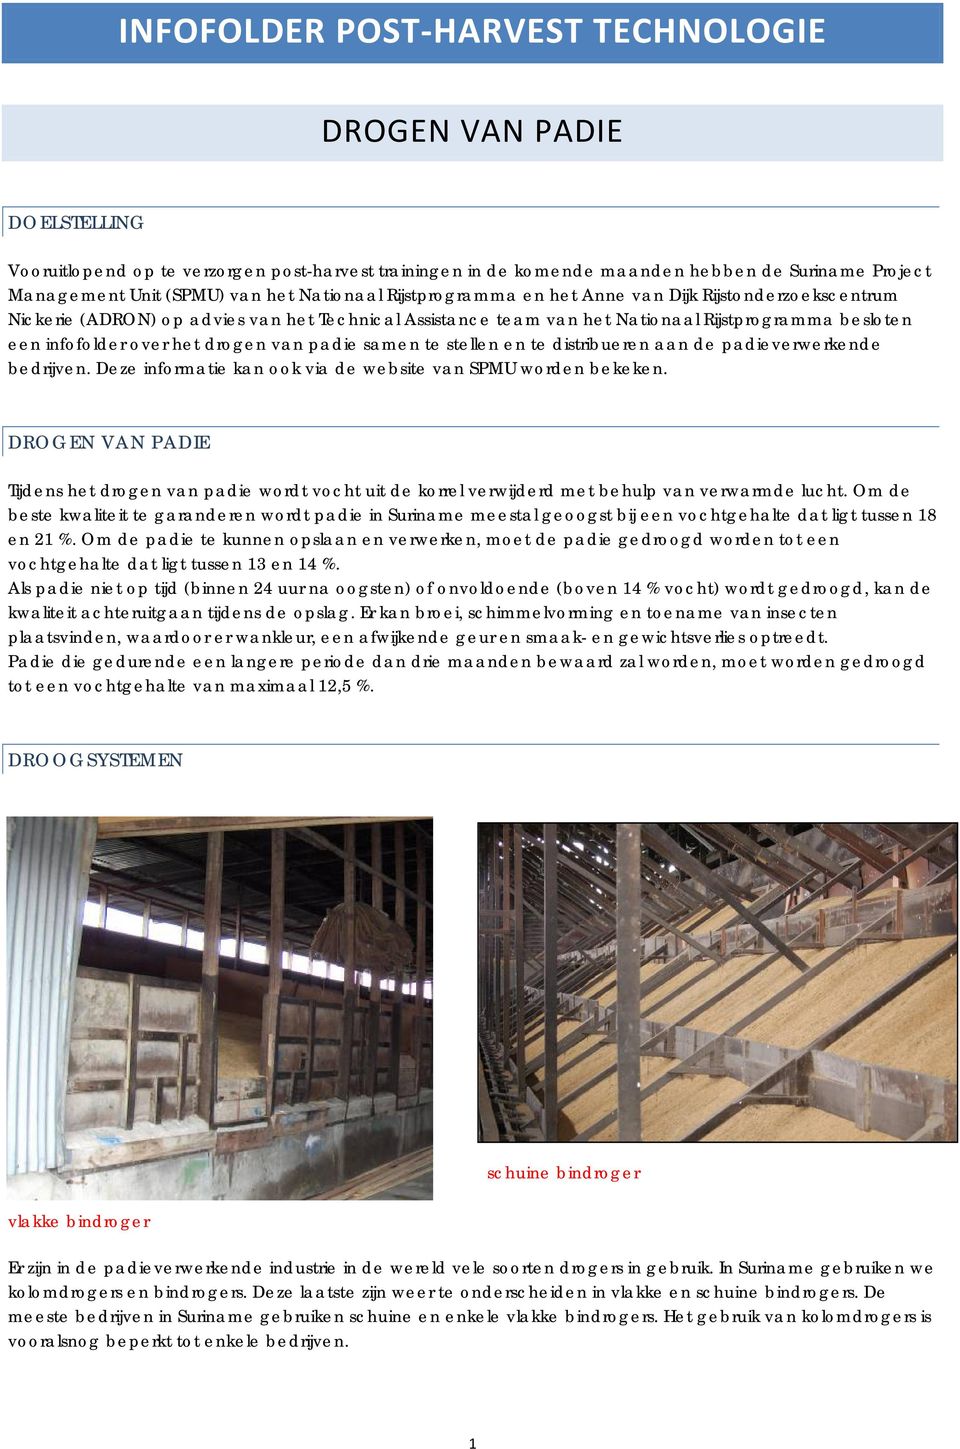 drogen van padie samen te stellen en te distribueren aan de padieverwerkende bedrijven. Deze informatie kan ook via de website van SPMU worden bekeken.